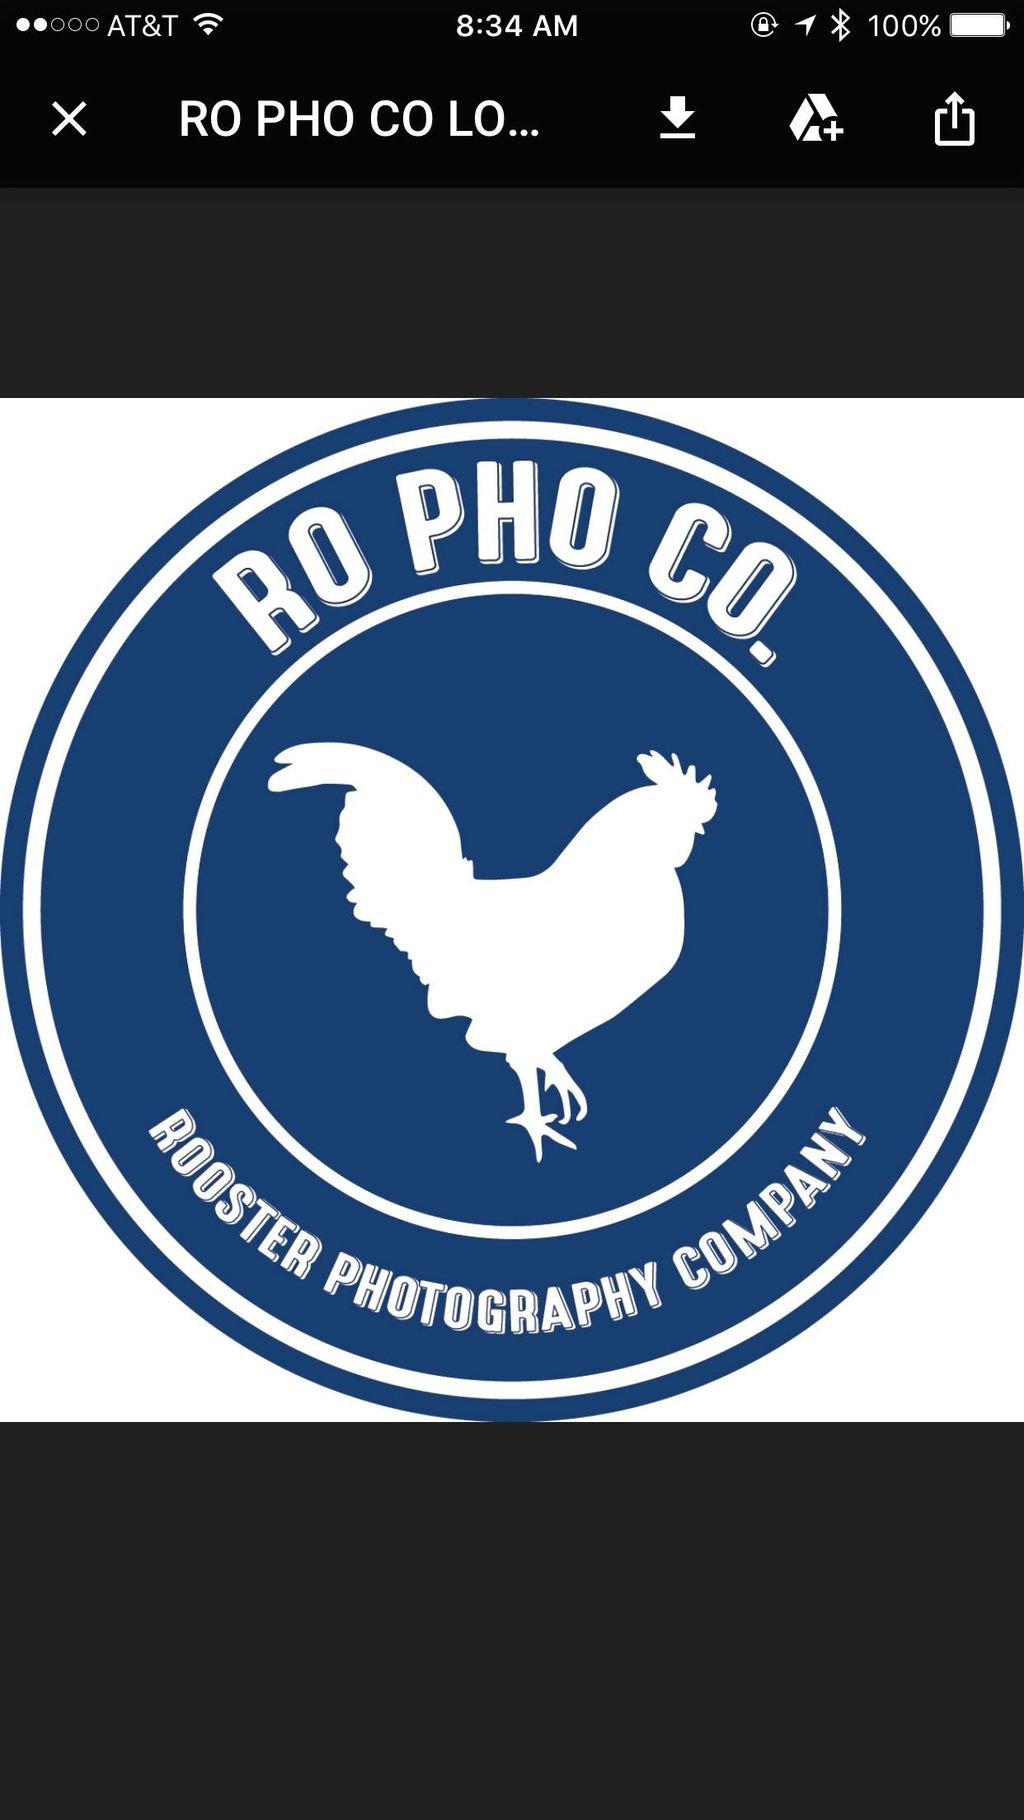 Ro Pho Co.